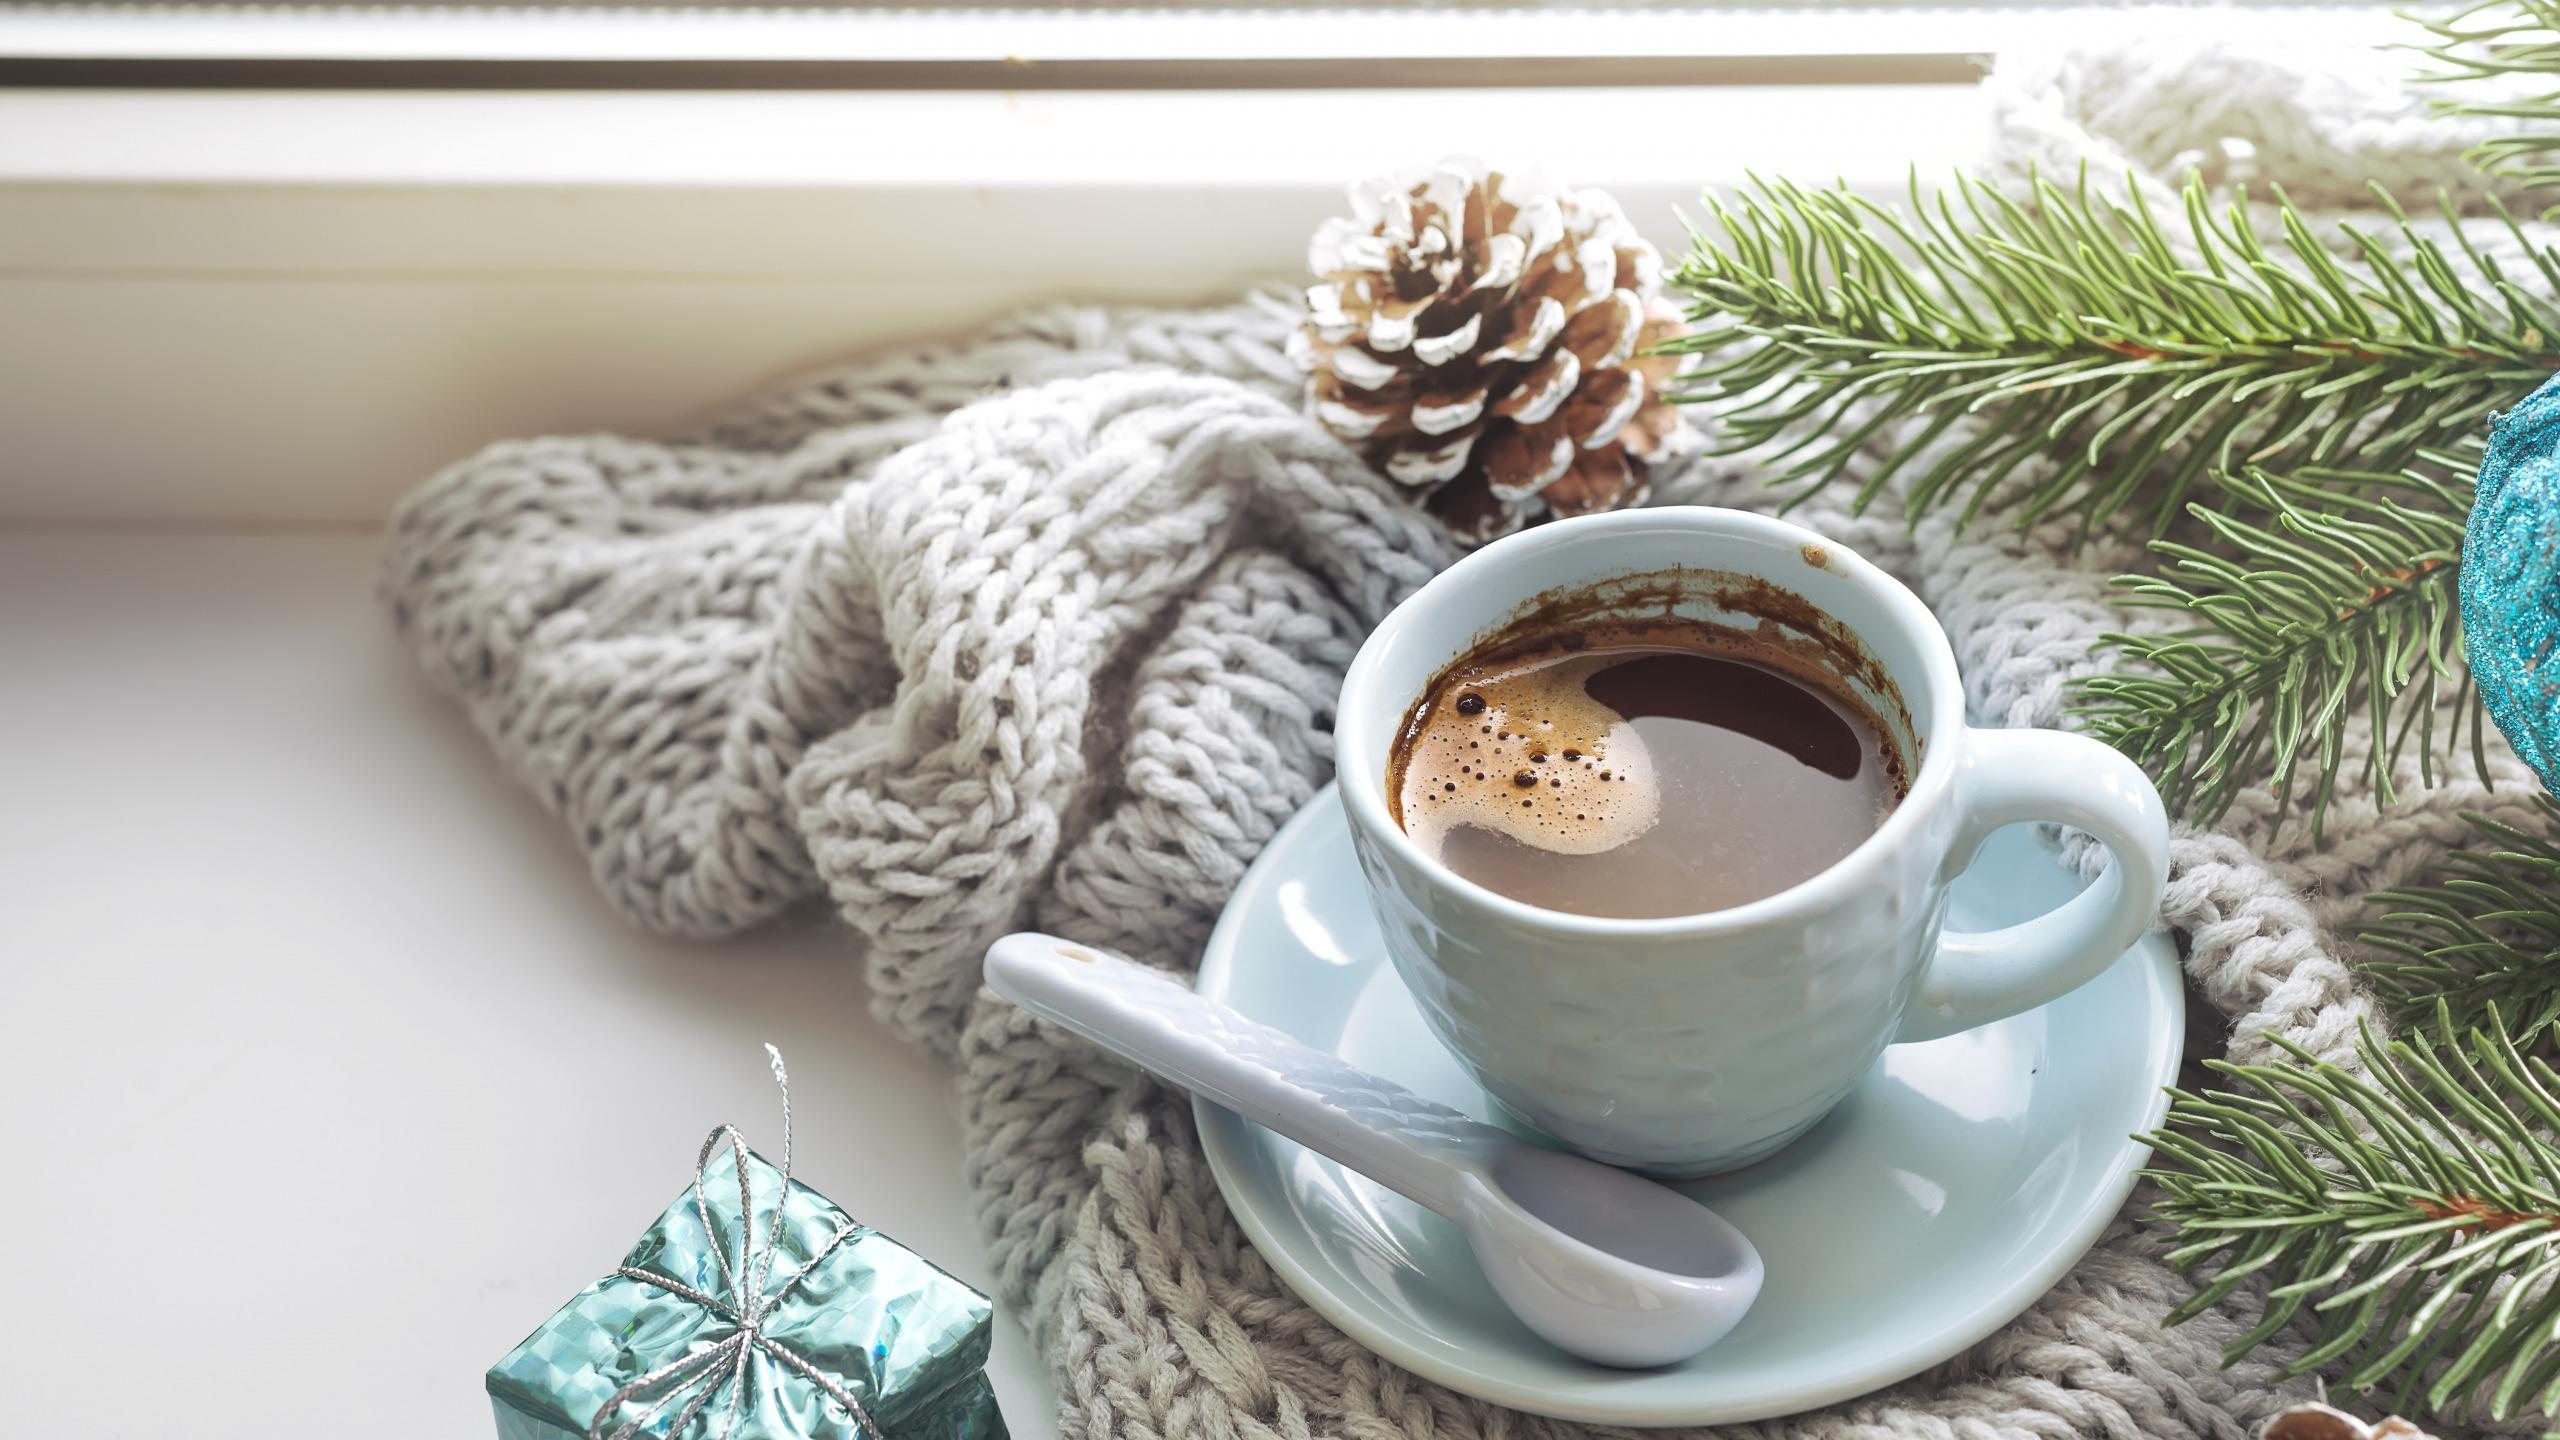 2 352 941 рез. по запросу «Кофе утром» — изображения, стоковые фотографии,  трехмерные объекты и векторная графика | Shutterstock